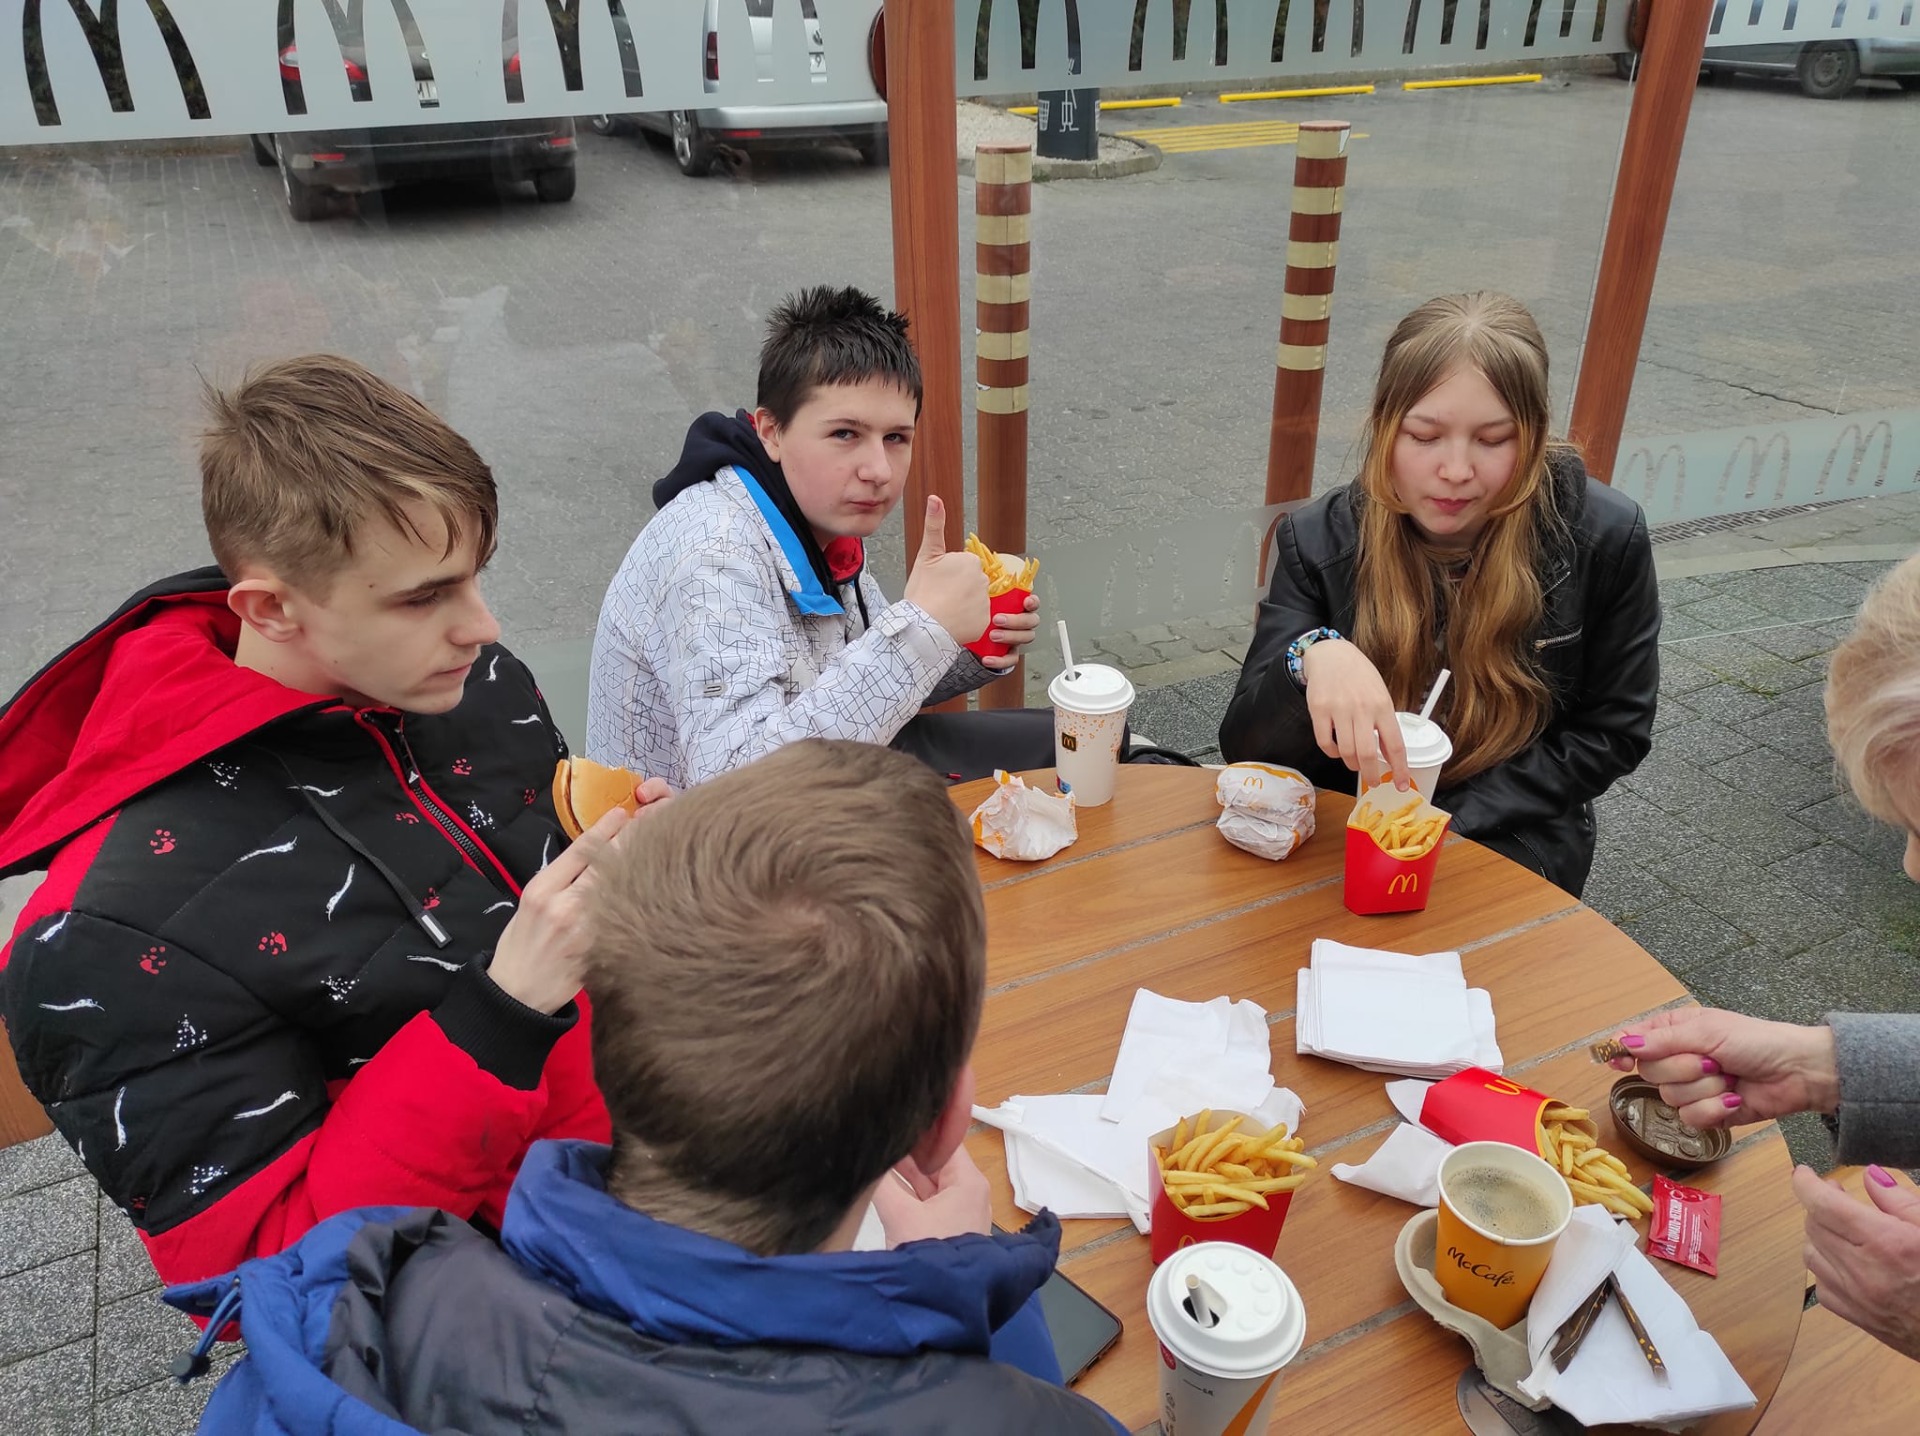 Uczniowie jedzą posiłek przy stoliku w restauracji Macdonalds